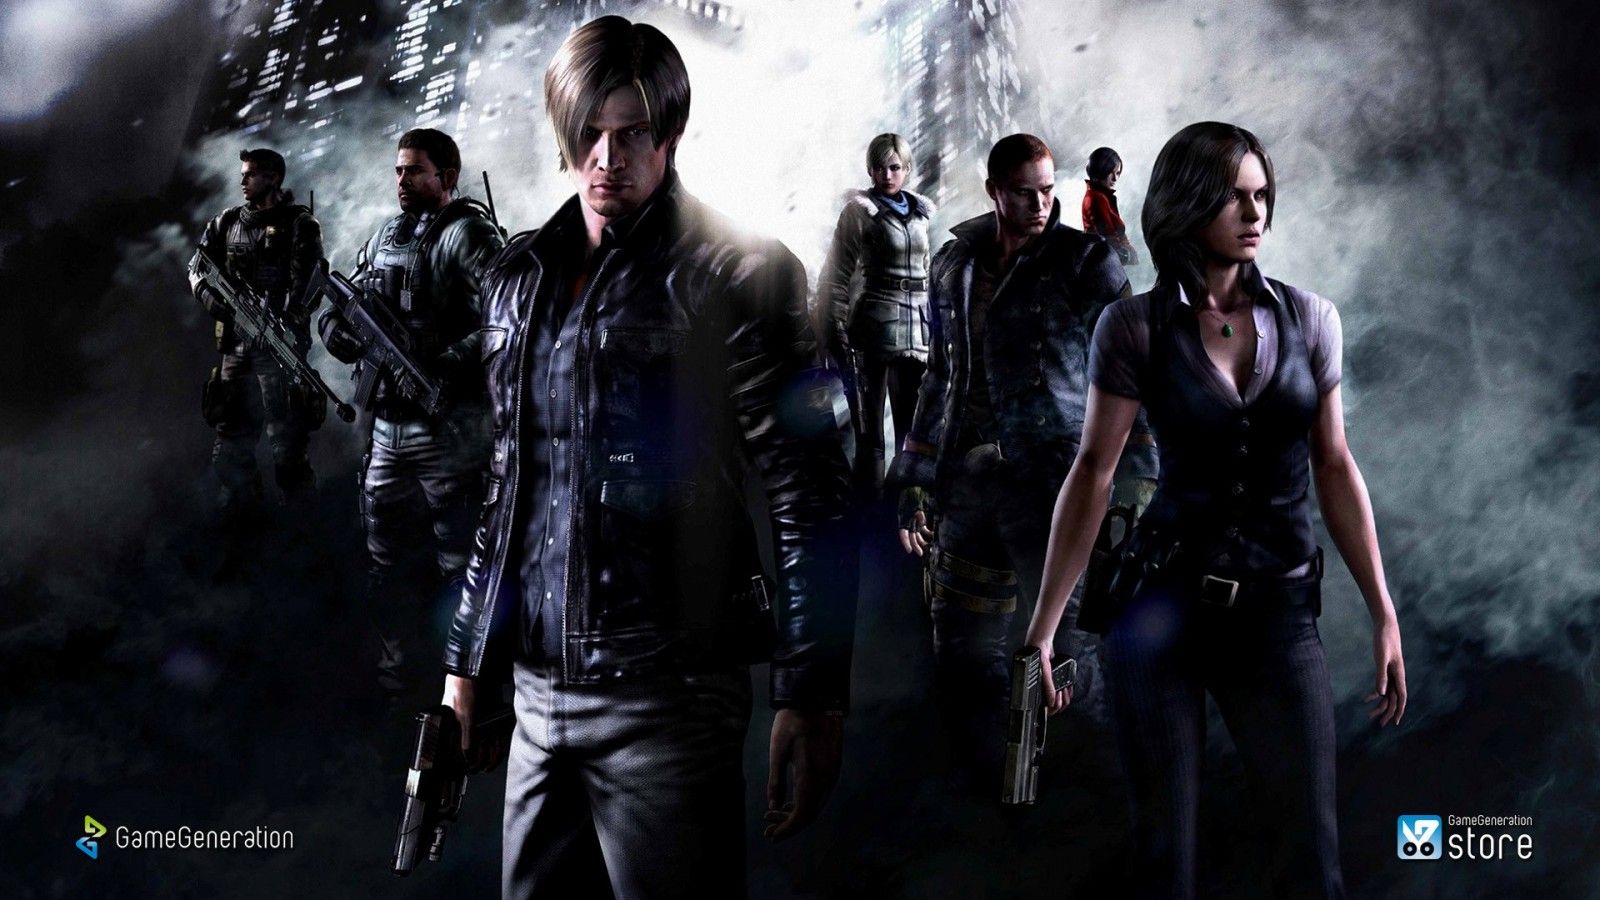 Resident Evil screenshot, computer wallpaper, fictional